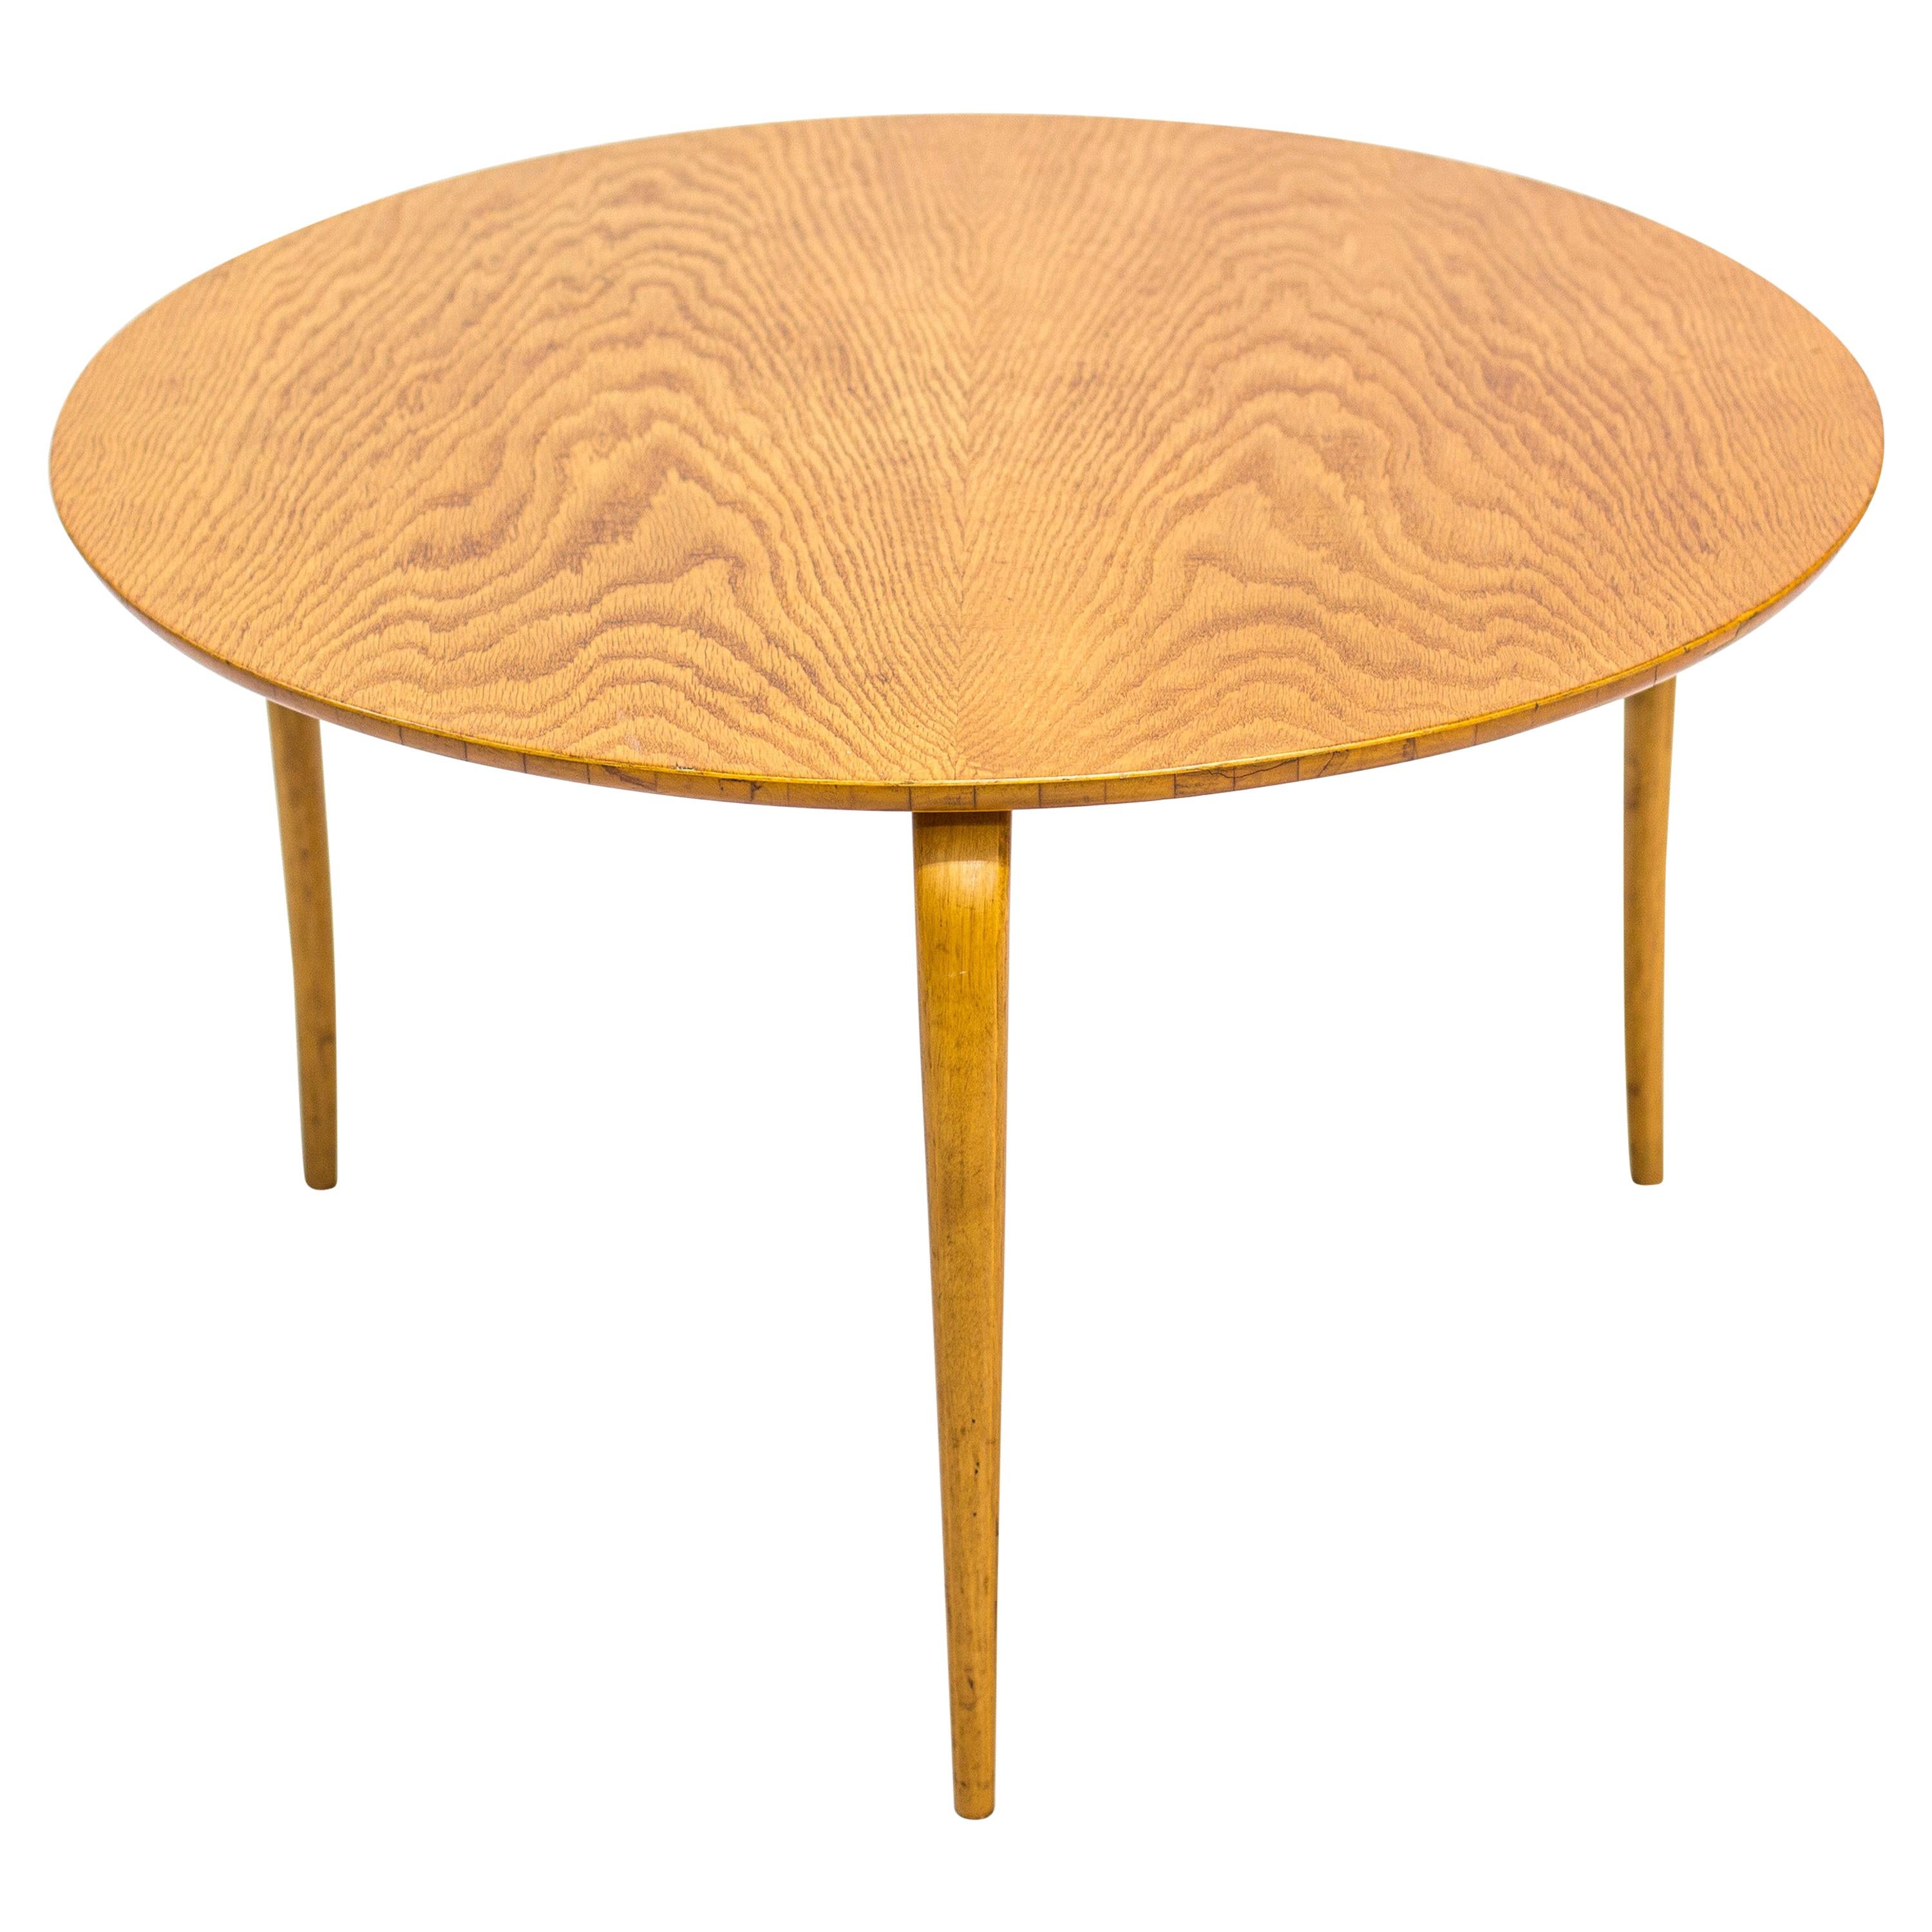 Sofa Table “Annika” by Bruno Mathsson for Firma Karl Mathsson Sweden, circa 1936